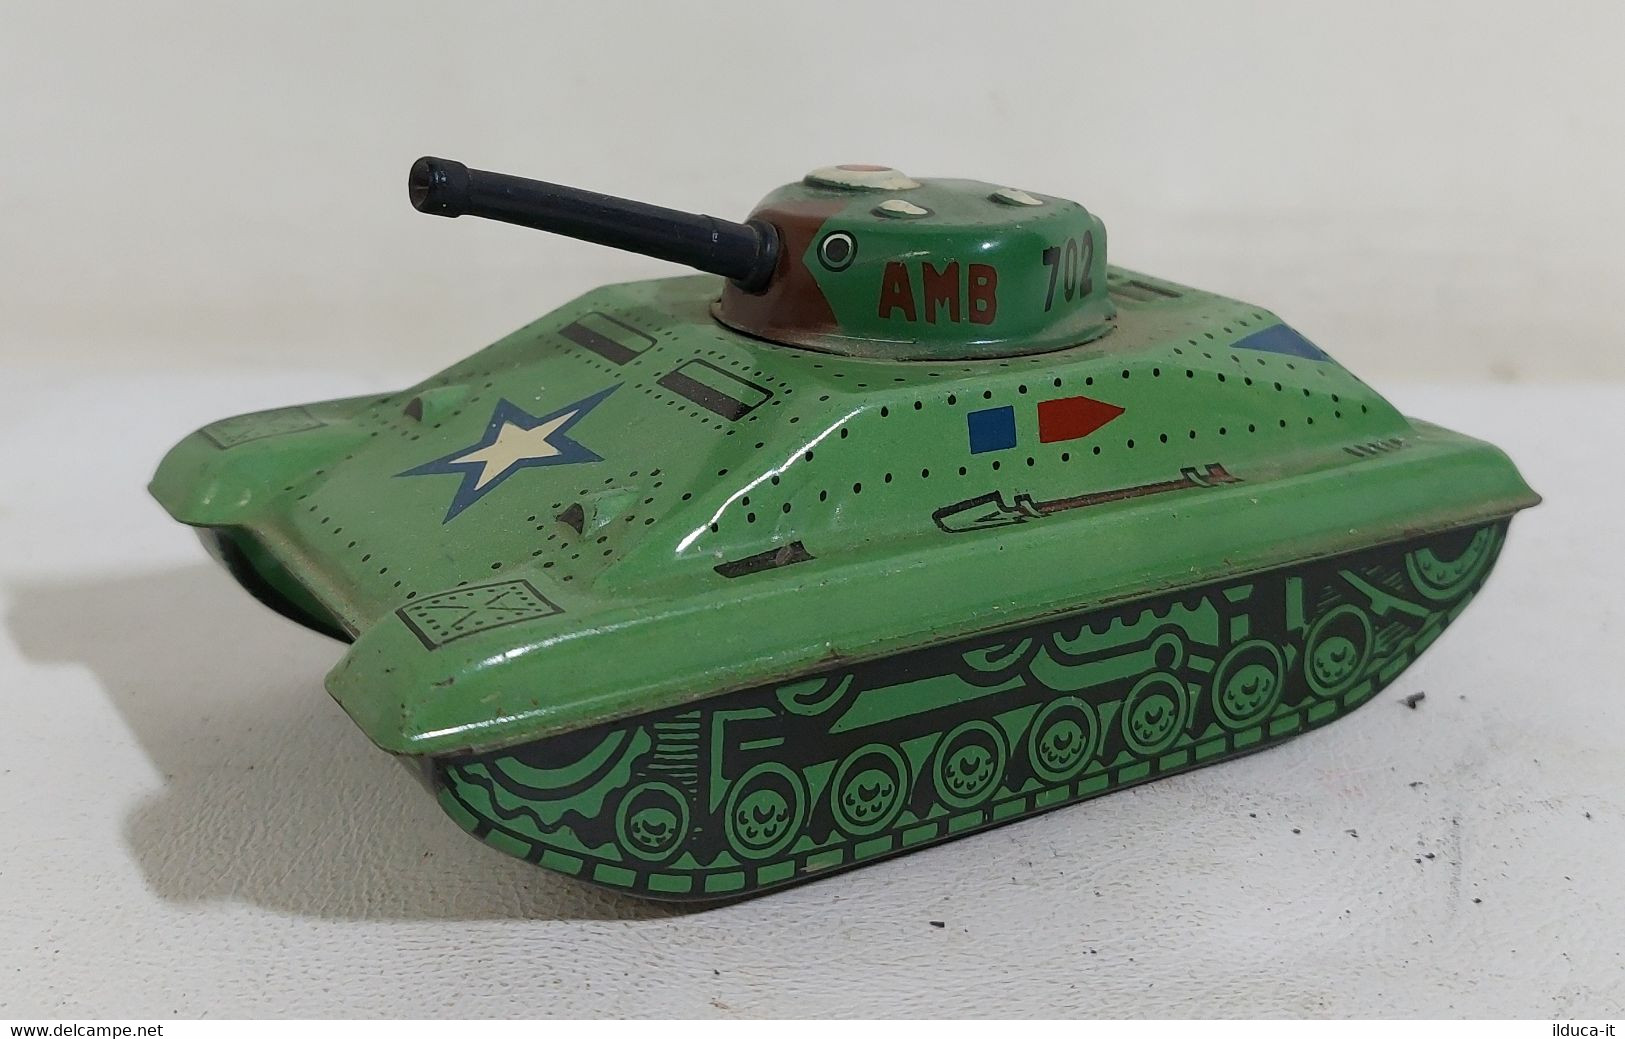 I107108 Giocattolo Latta / Tin Toy A Frizione - Marchesini Tank AMB 702 - Panzer